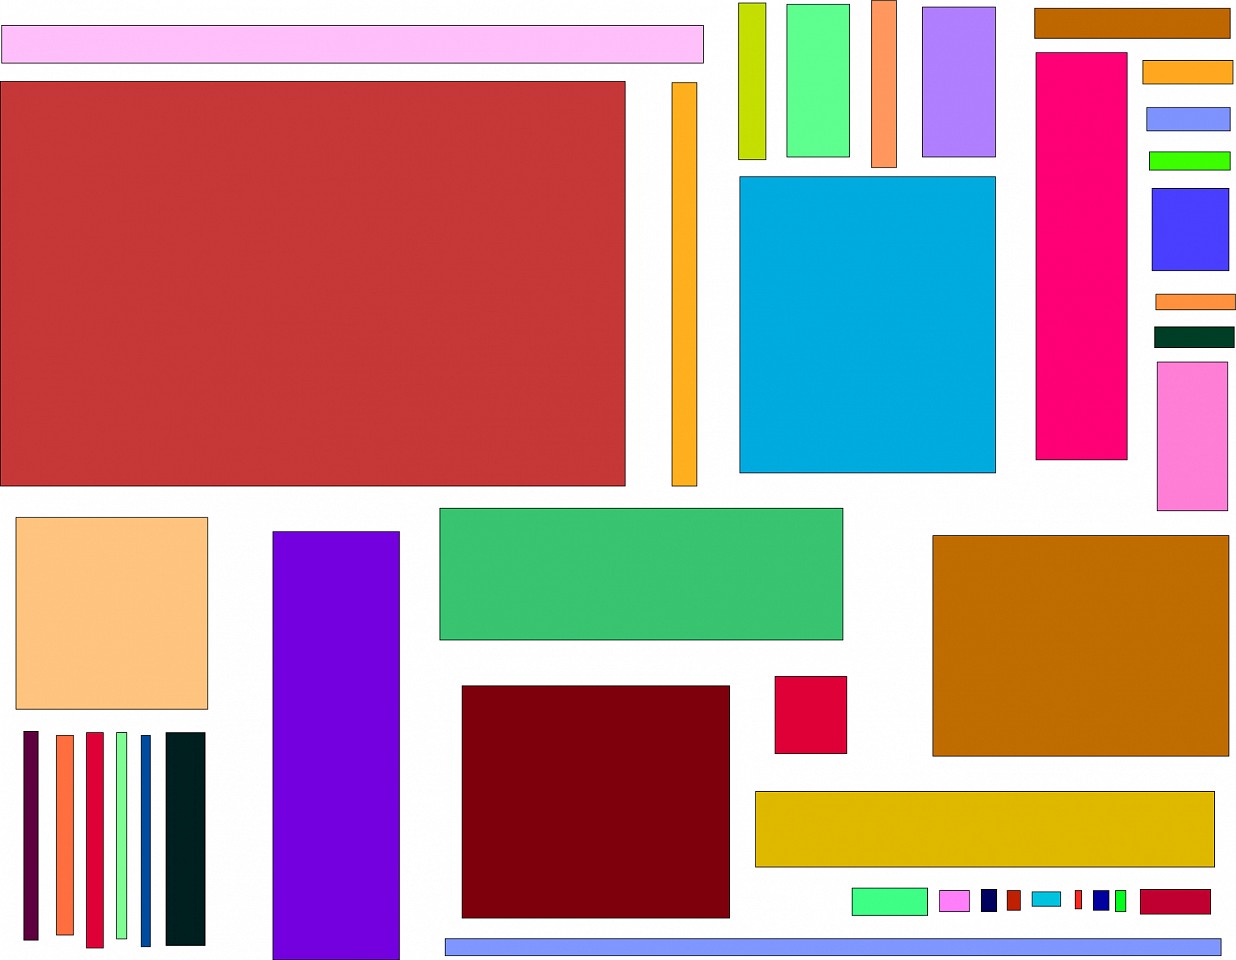 Dane Albert, Color Blocks #1, 2023
Acrylic on canvas (Concept), 48 x 60 in. (121.9 x 152.4 cm)
Series of colored blocks in multiple configurations
DA.cb-2023-001